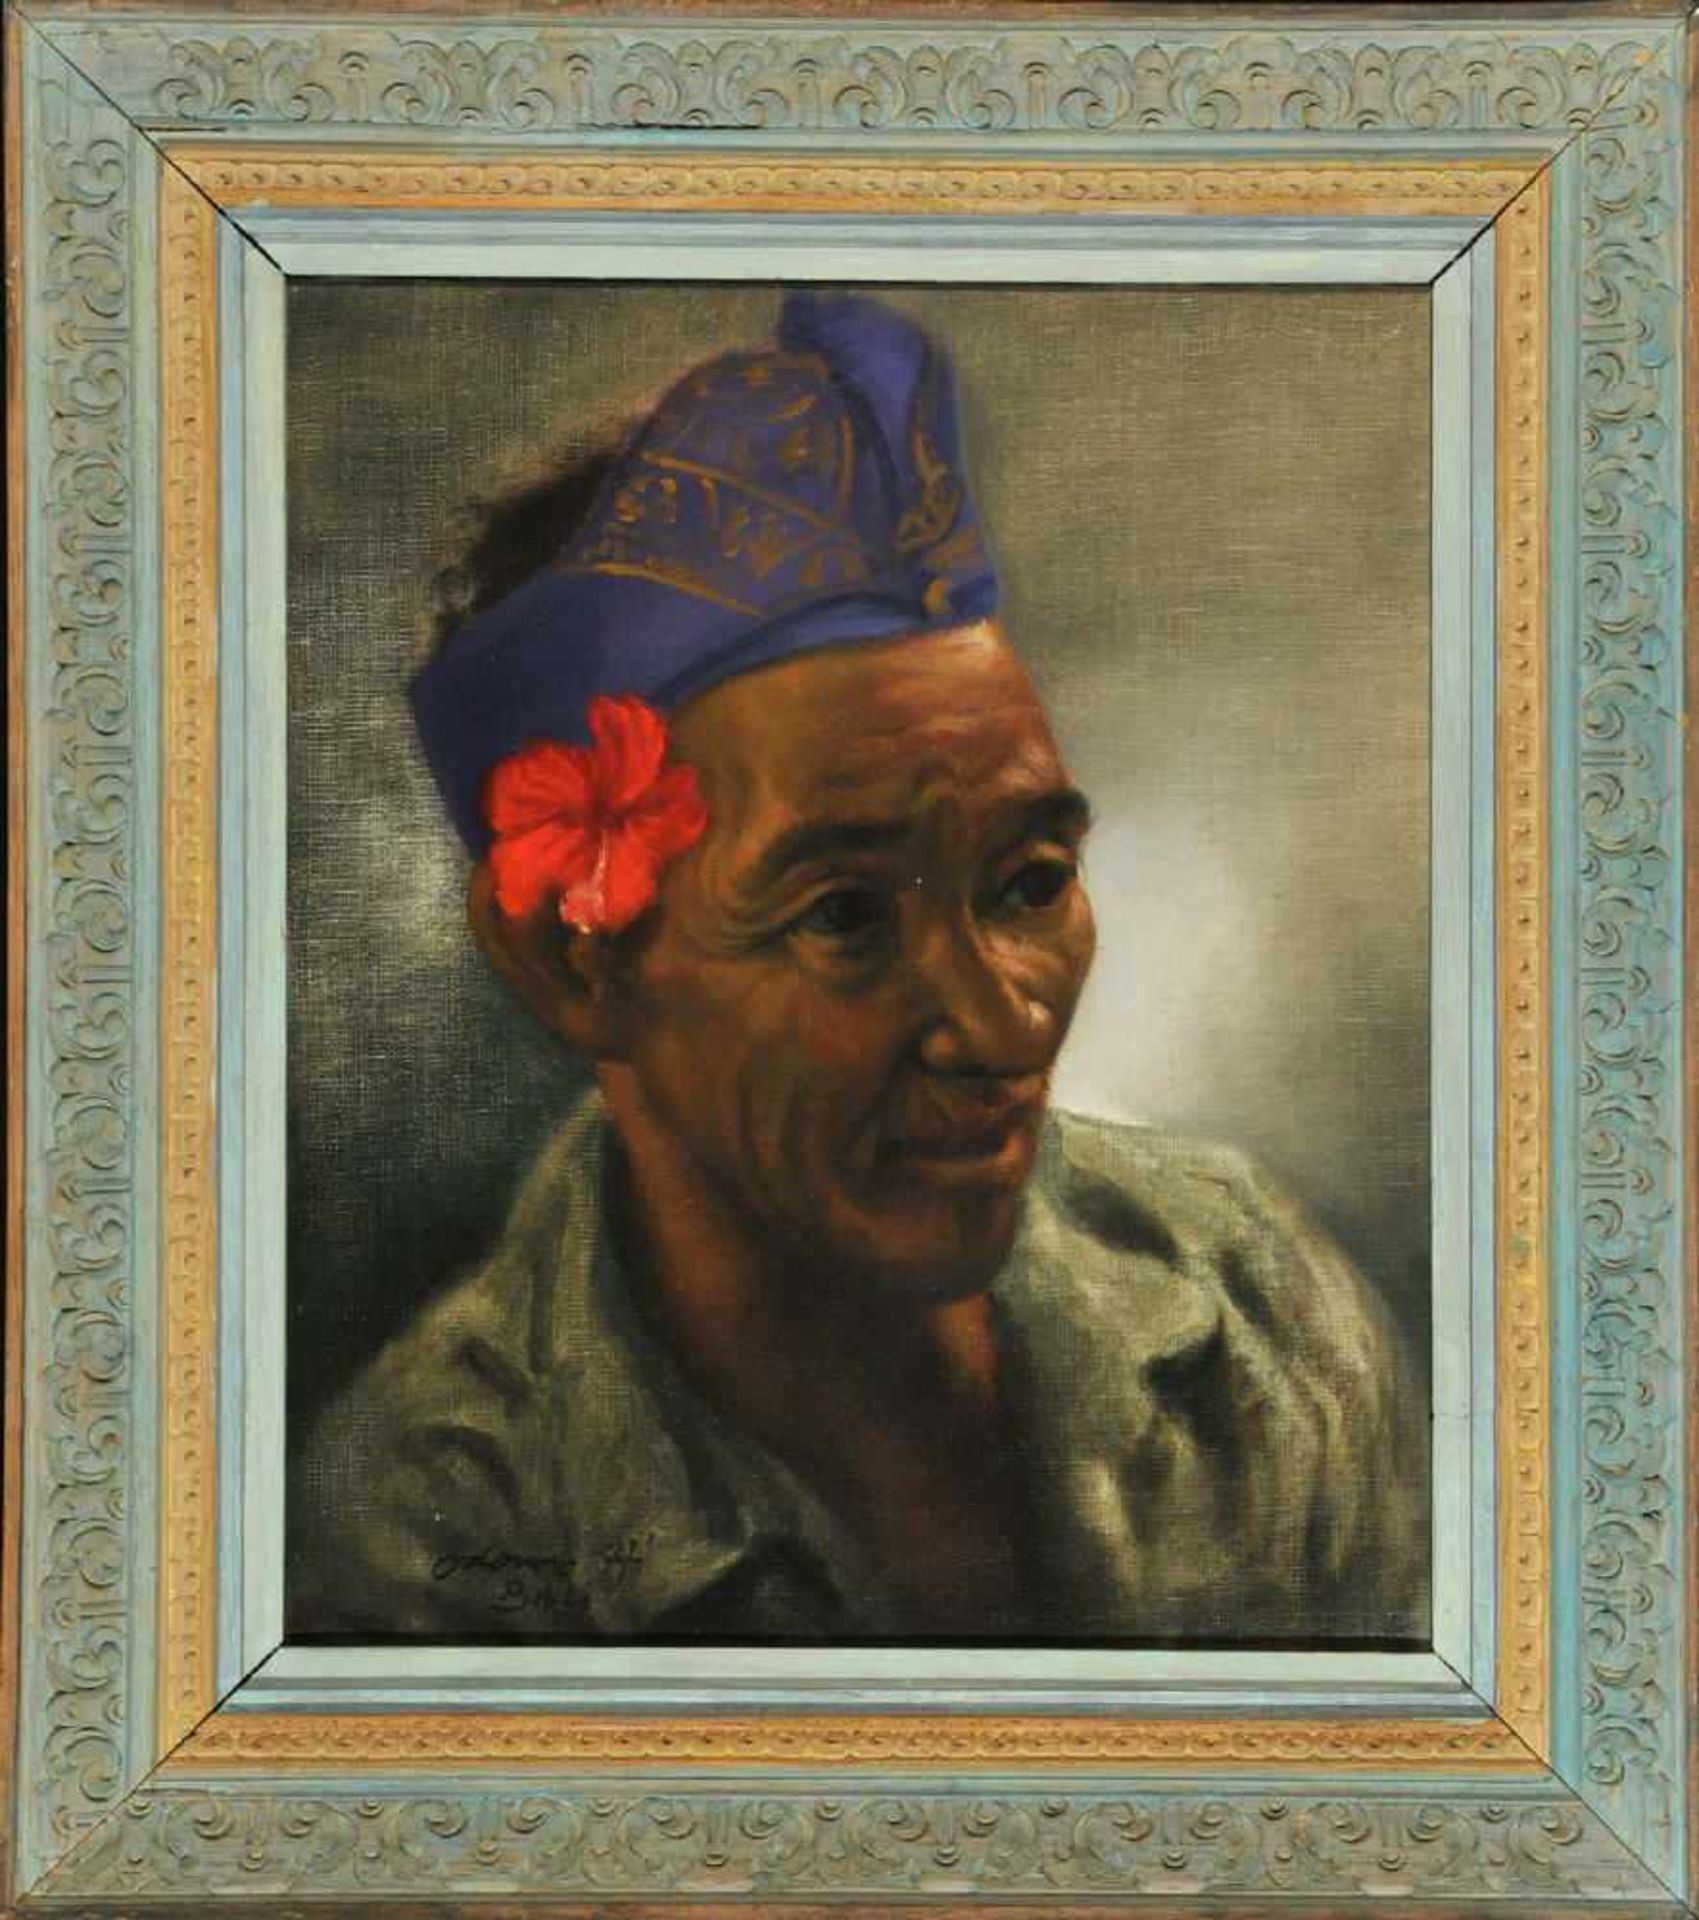 Balinesischer Künstler des 20. Jh.Öl/Lwd, 39 x 32 cm, " Bildnis eines Mannes ", u.l. undeutl. sign.,